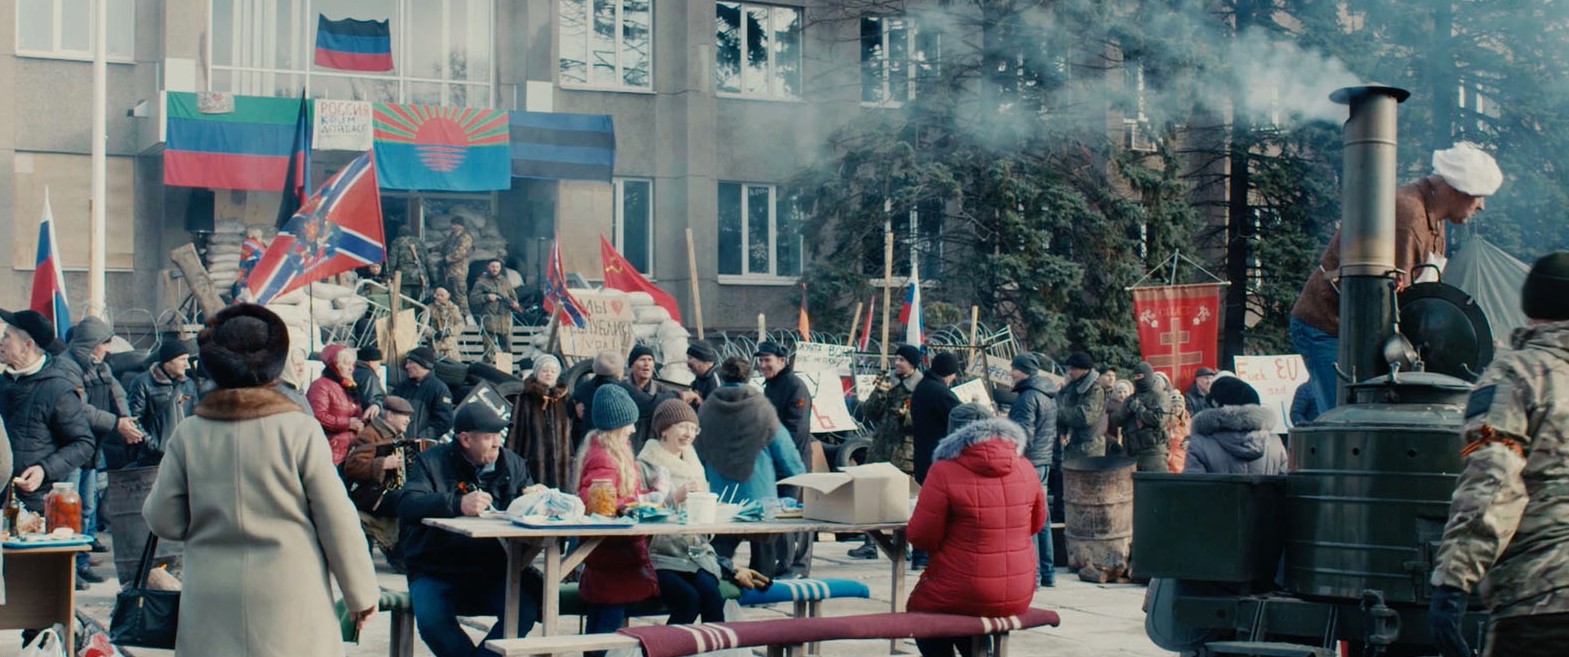 кадр из фильма "Донбасс" 2018